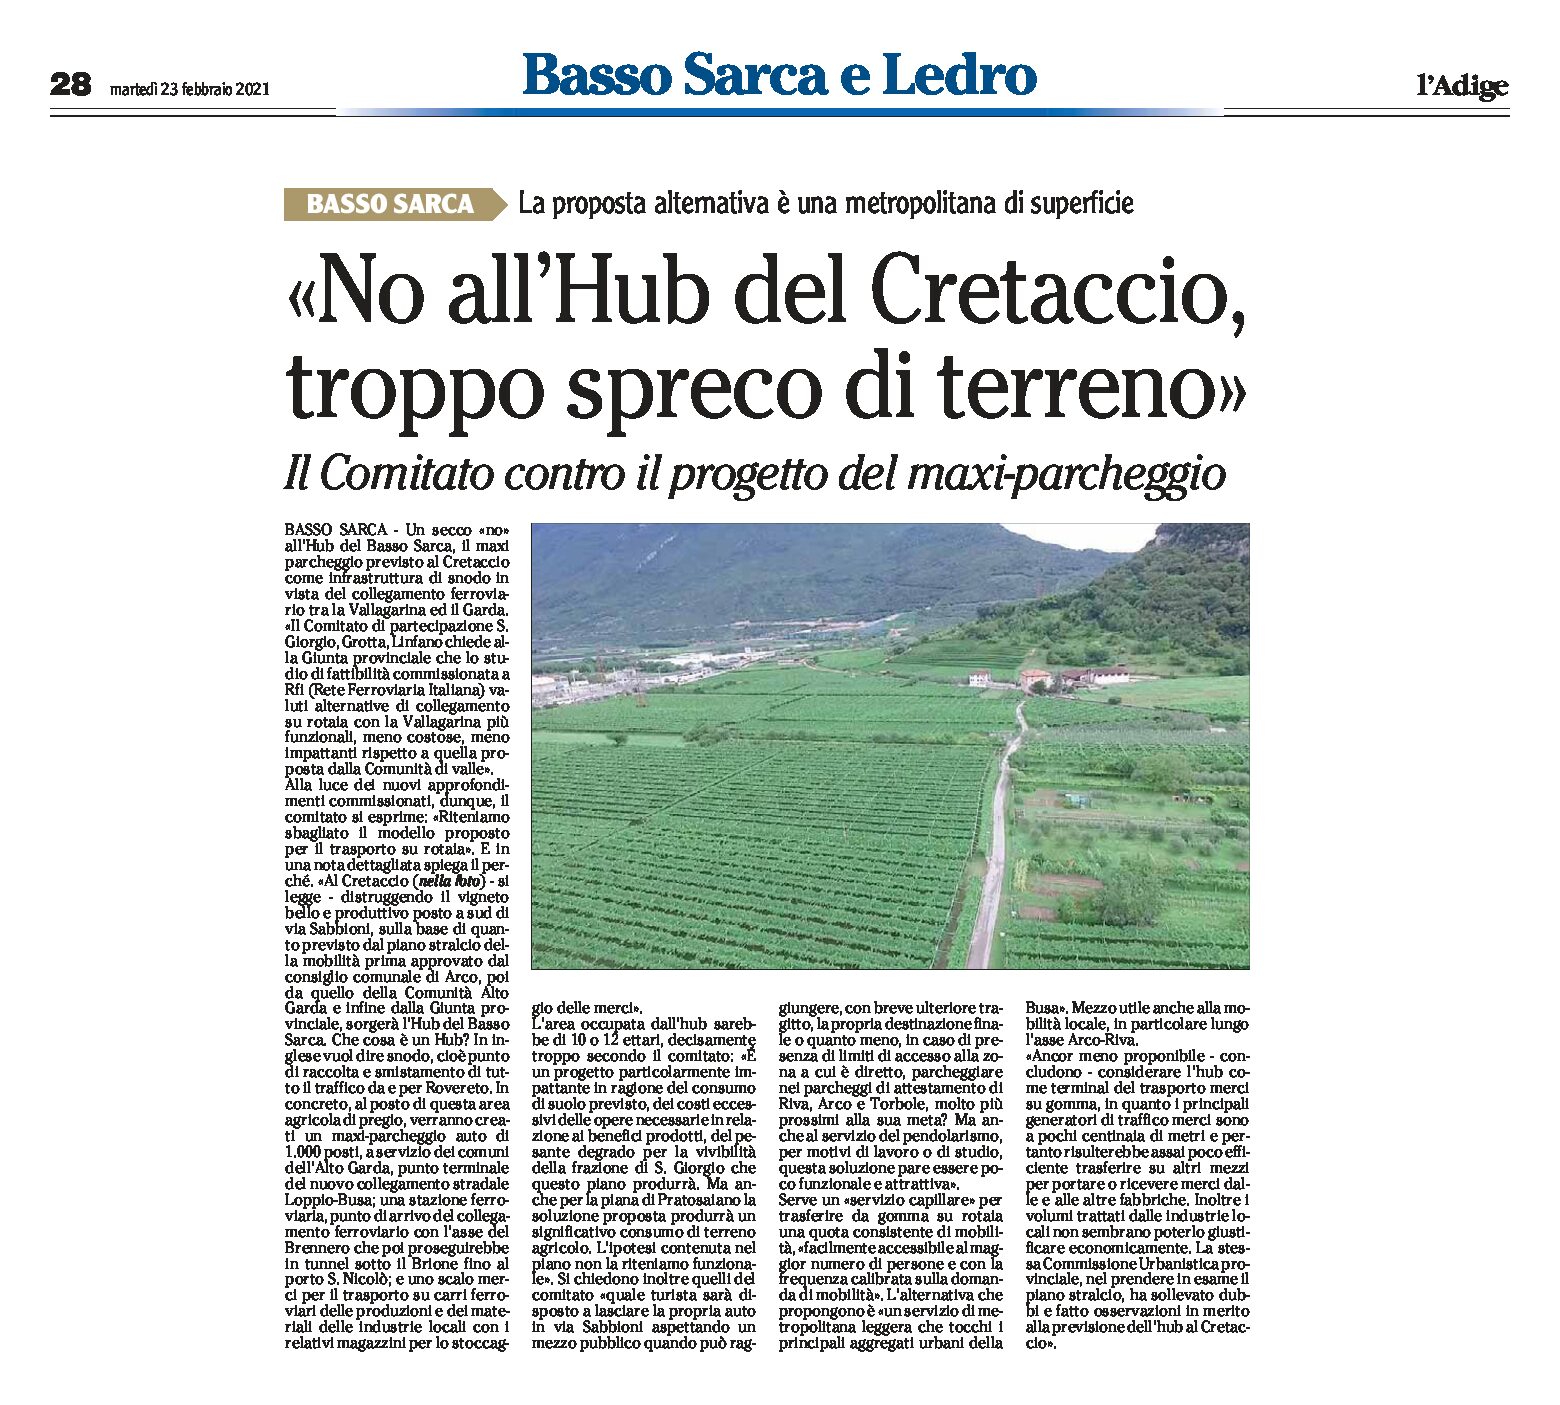 Basso Sarca: no all’Hub del Cretaccio, troppo spreco di terreno. Comitato contro il progetto